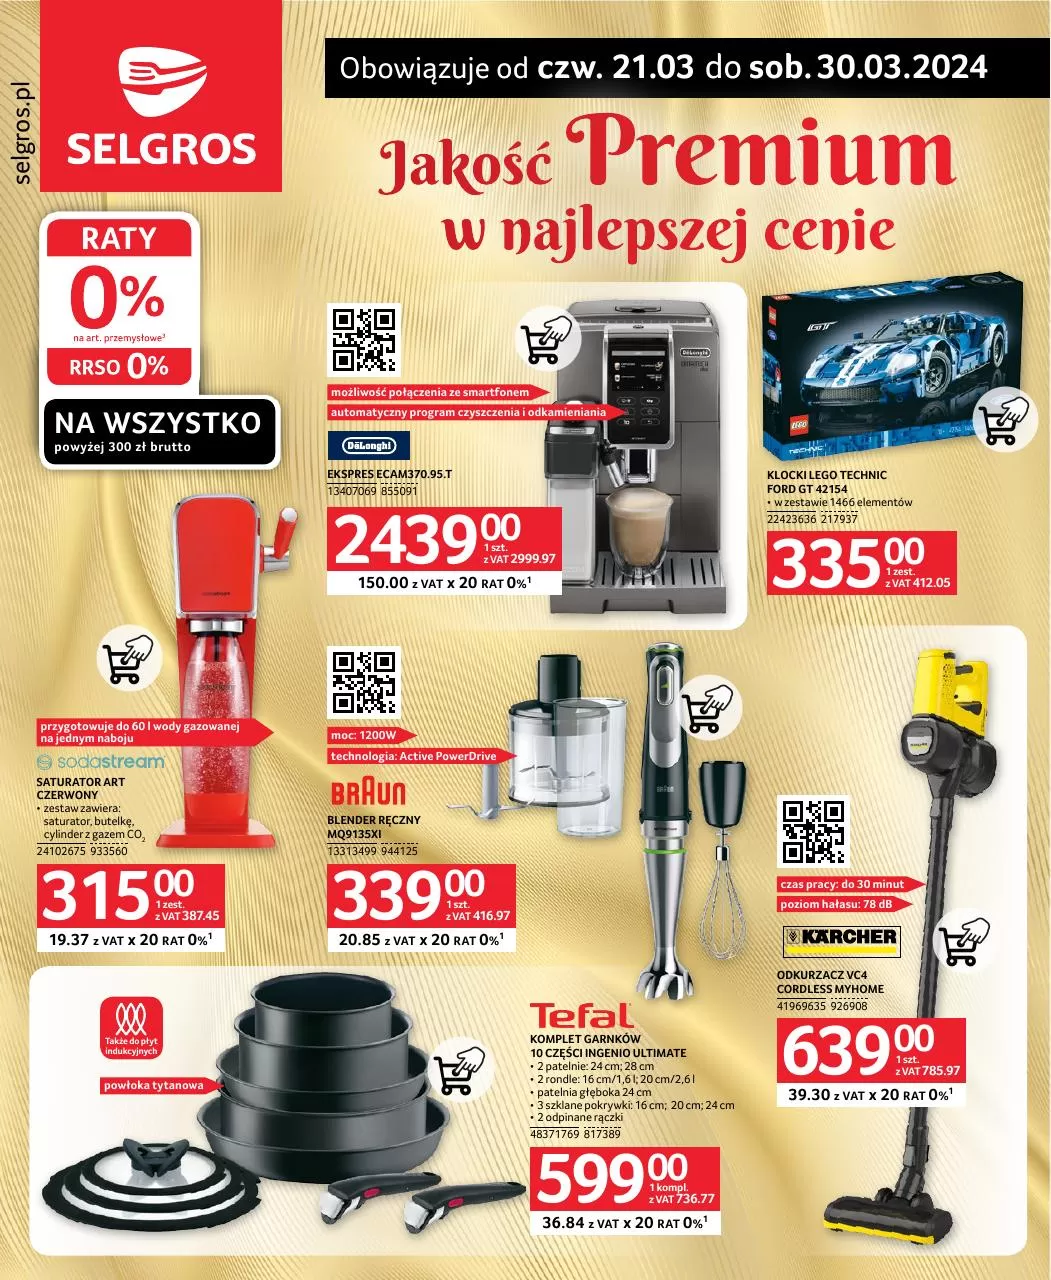 Gazetka promocyjna Selgros. Tytuł: Jakość premium w najlepszej cenie. Oferta obowiązuje: 2024-03-21 - 2024-03-30